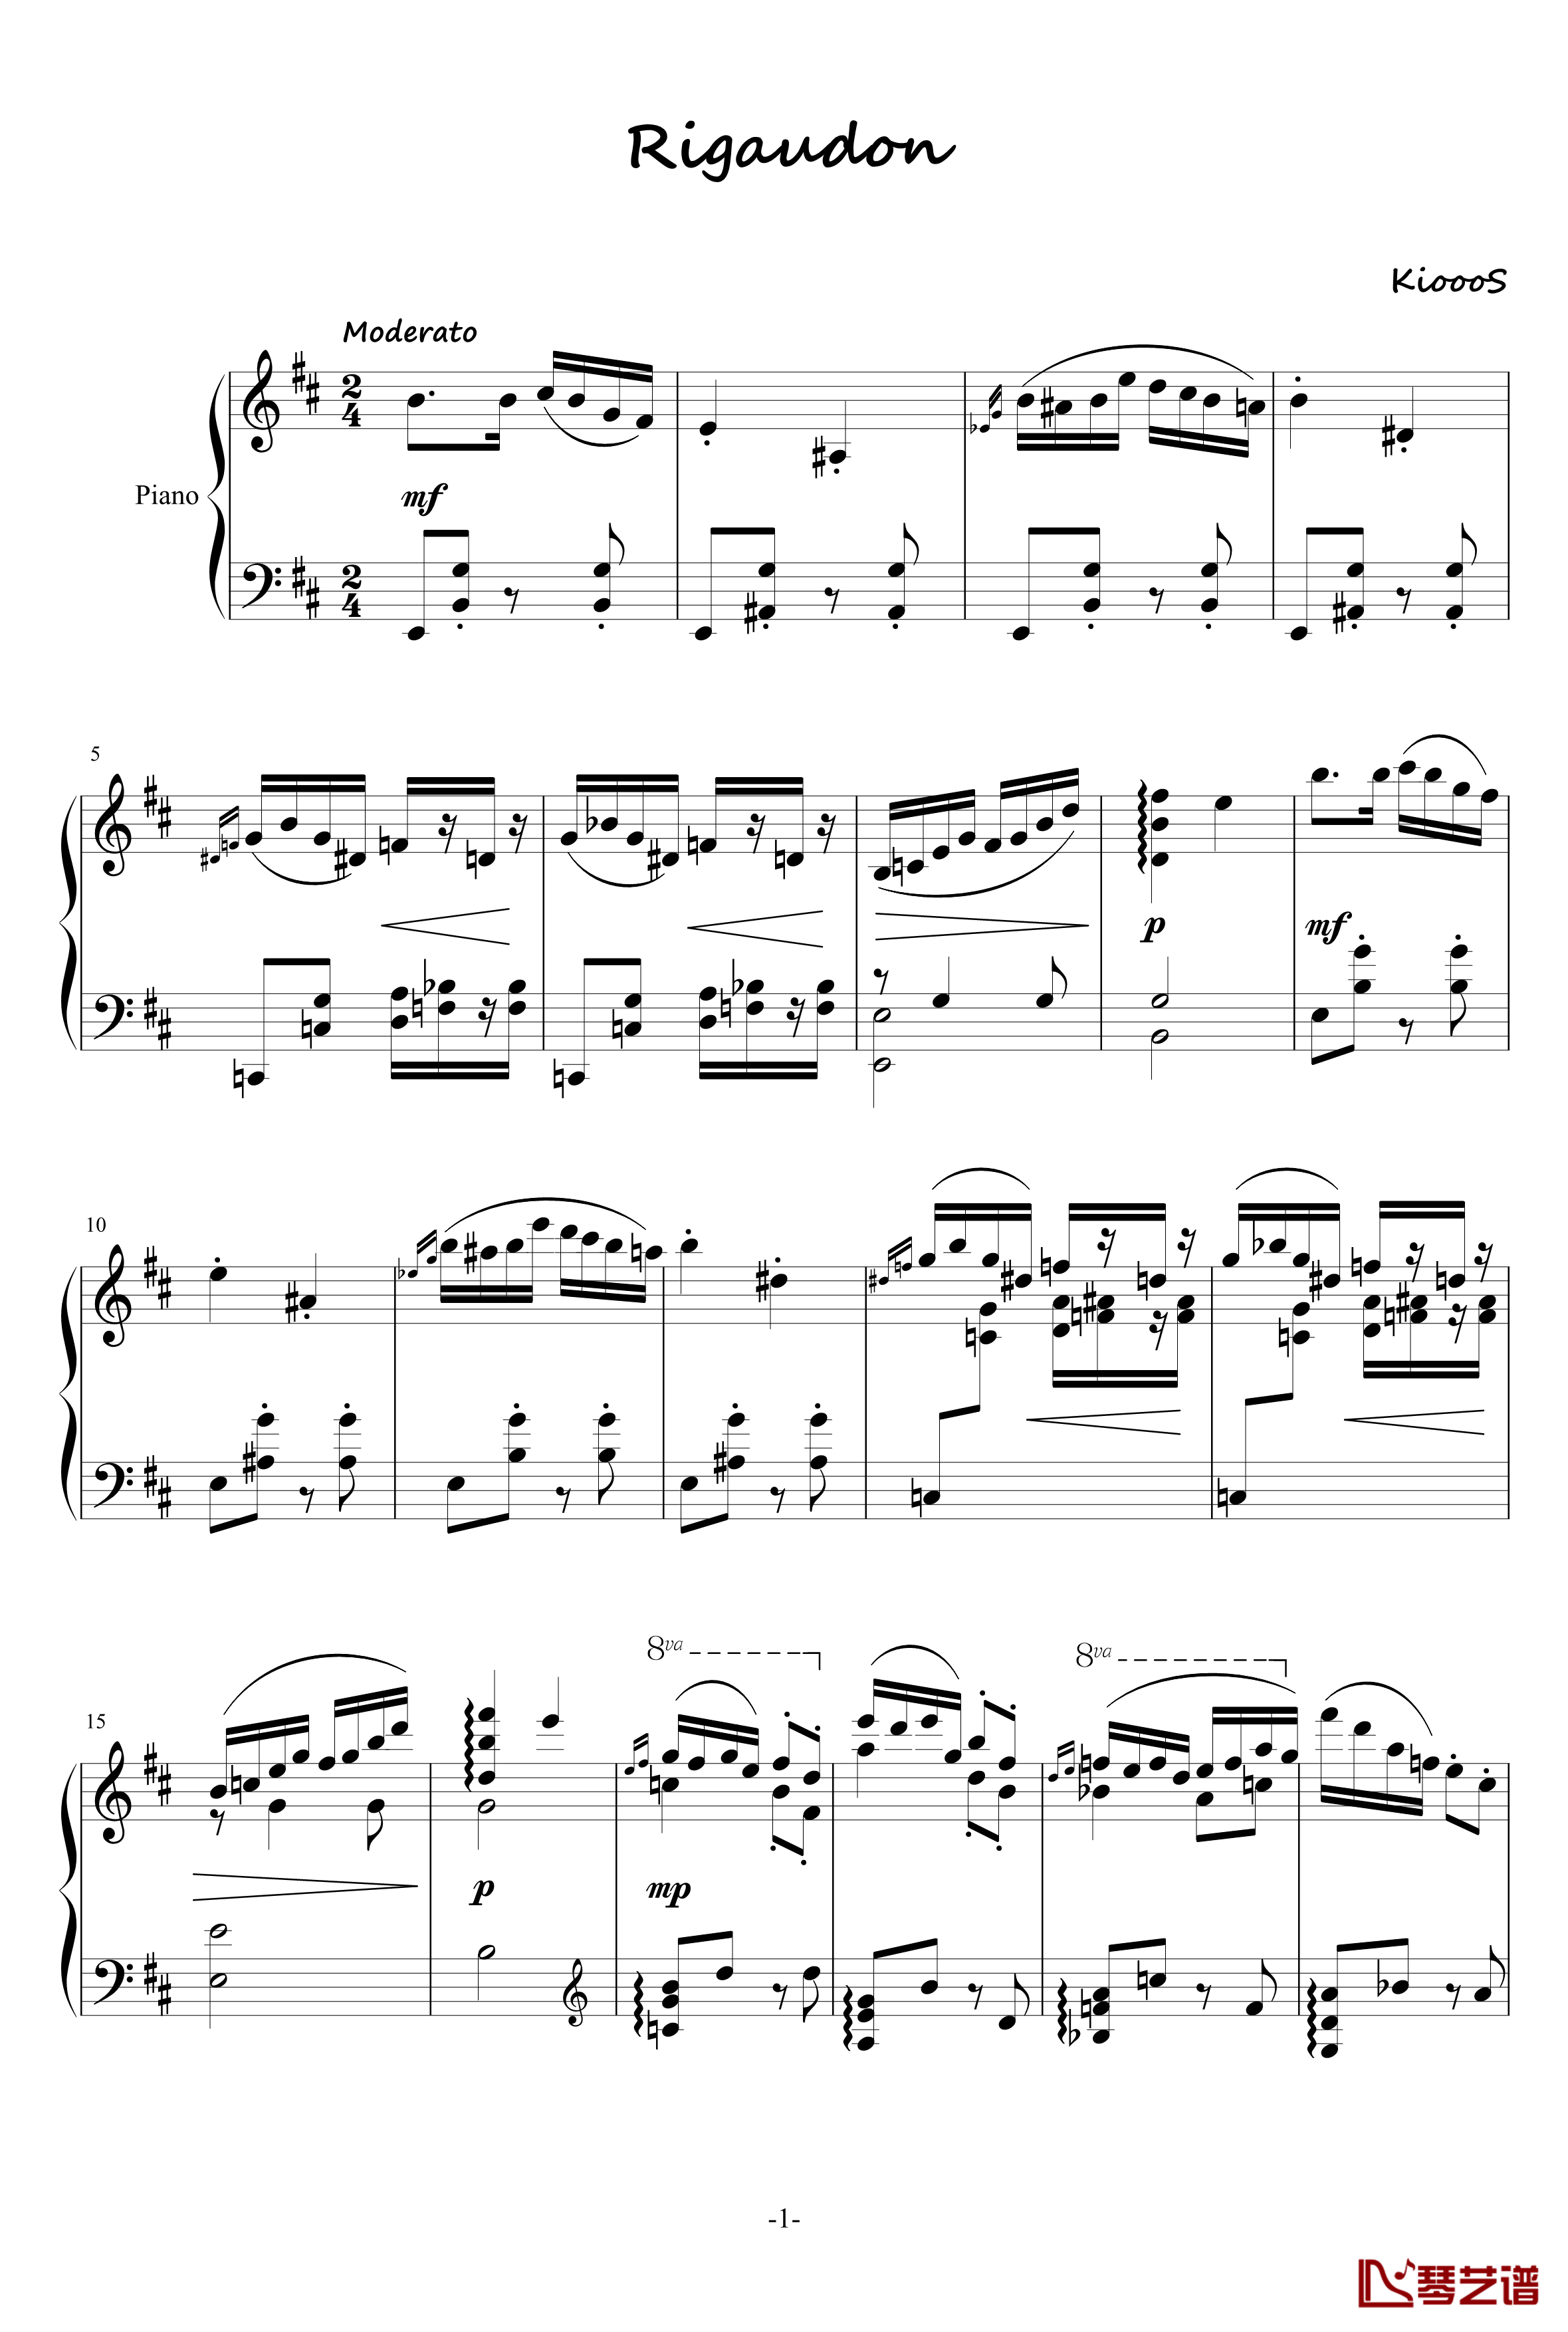 里格顿舞曲钢琴谱-KioooS1